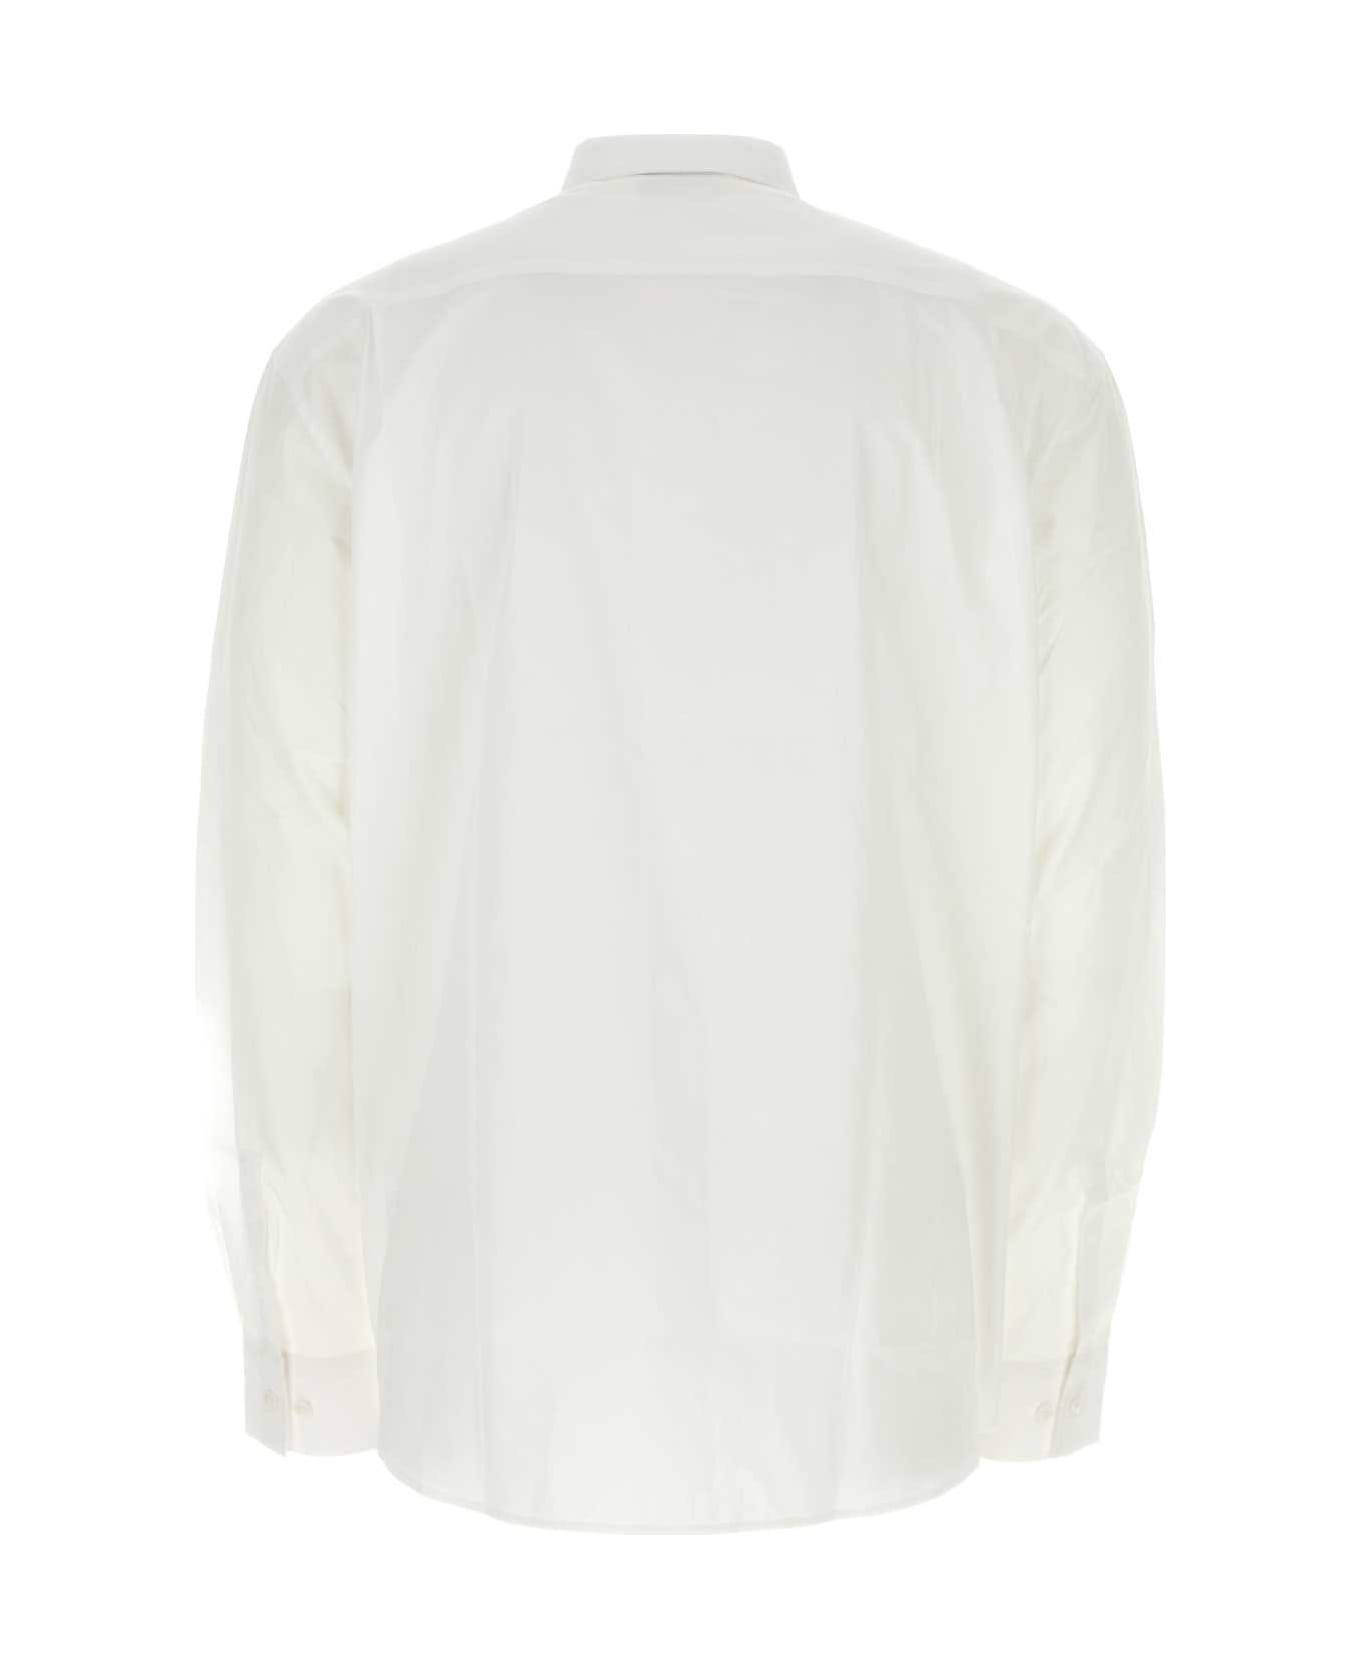 VTMNTS White Poplin Shirt - WHITE / RED シャツ